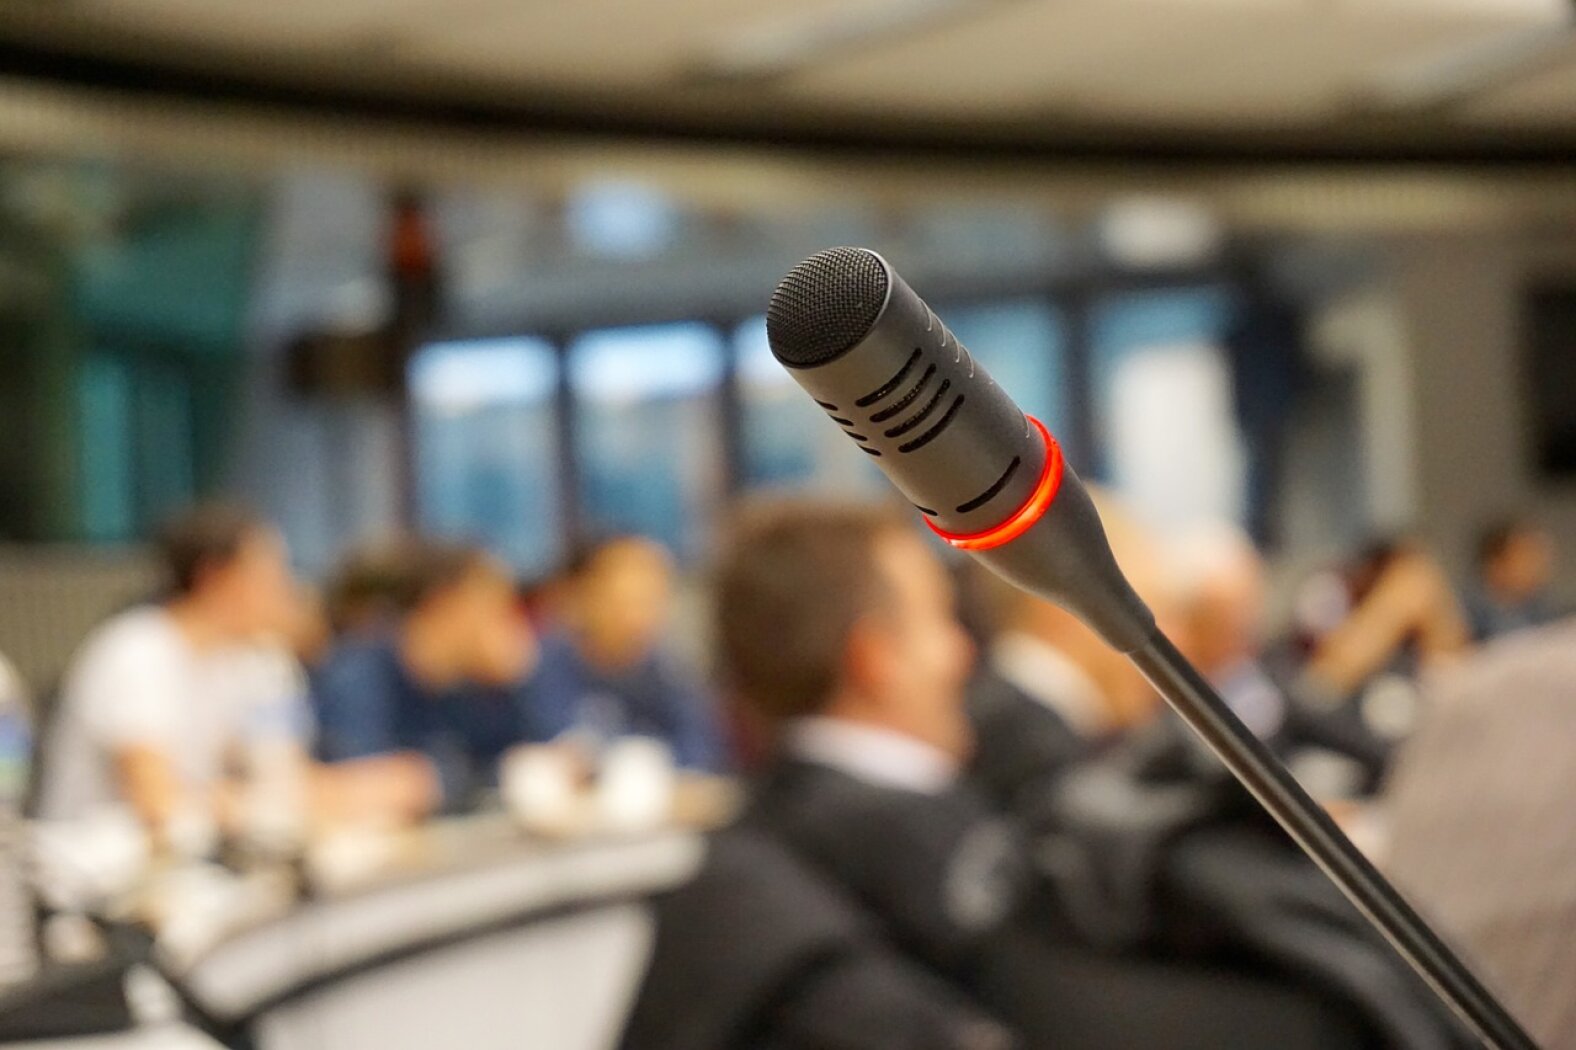 Kazlų Rūdos savivaldybės šeštojo šaukimo tarybos trisdešimt antrojo posėdžio, vyksiančio 2021 m. birželio 28 d. 13 val., darbotvarkė